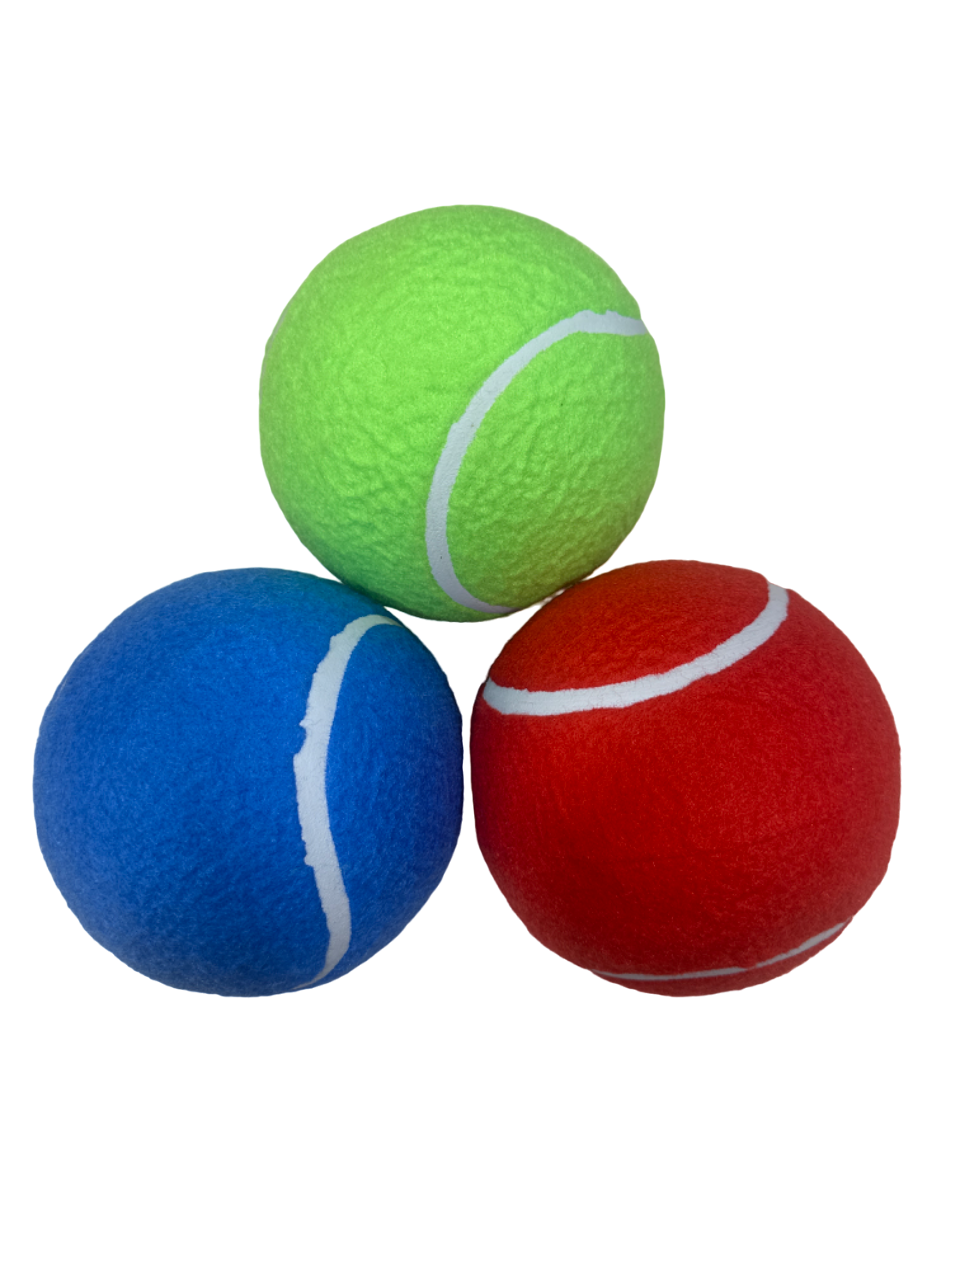 Jumbo Tennis Ball 1 Piece